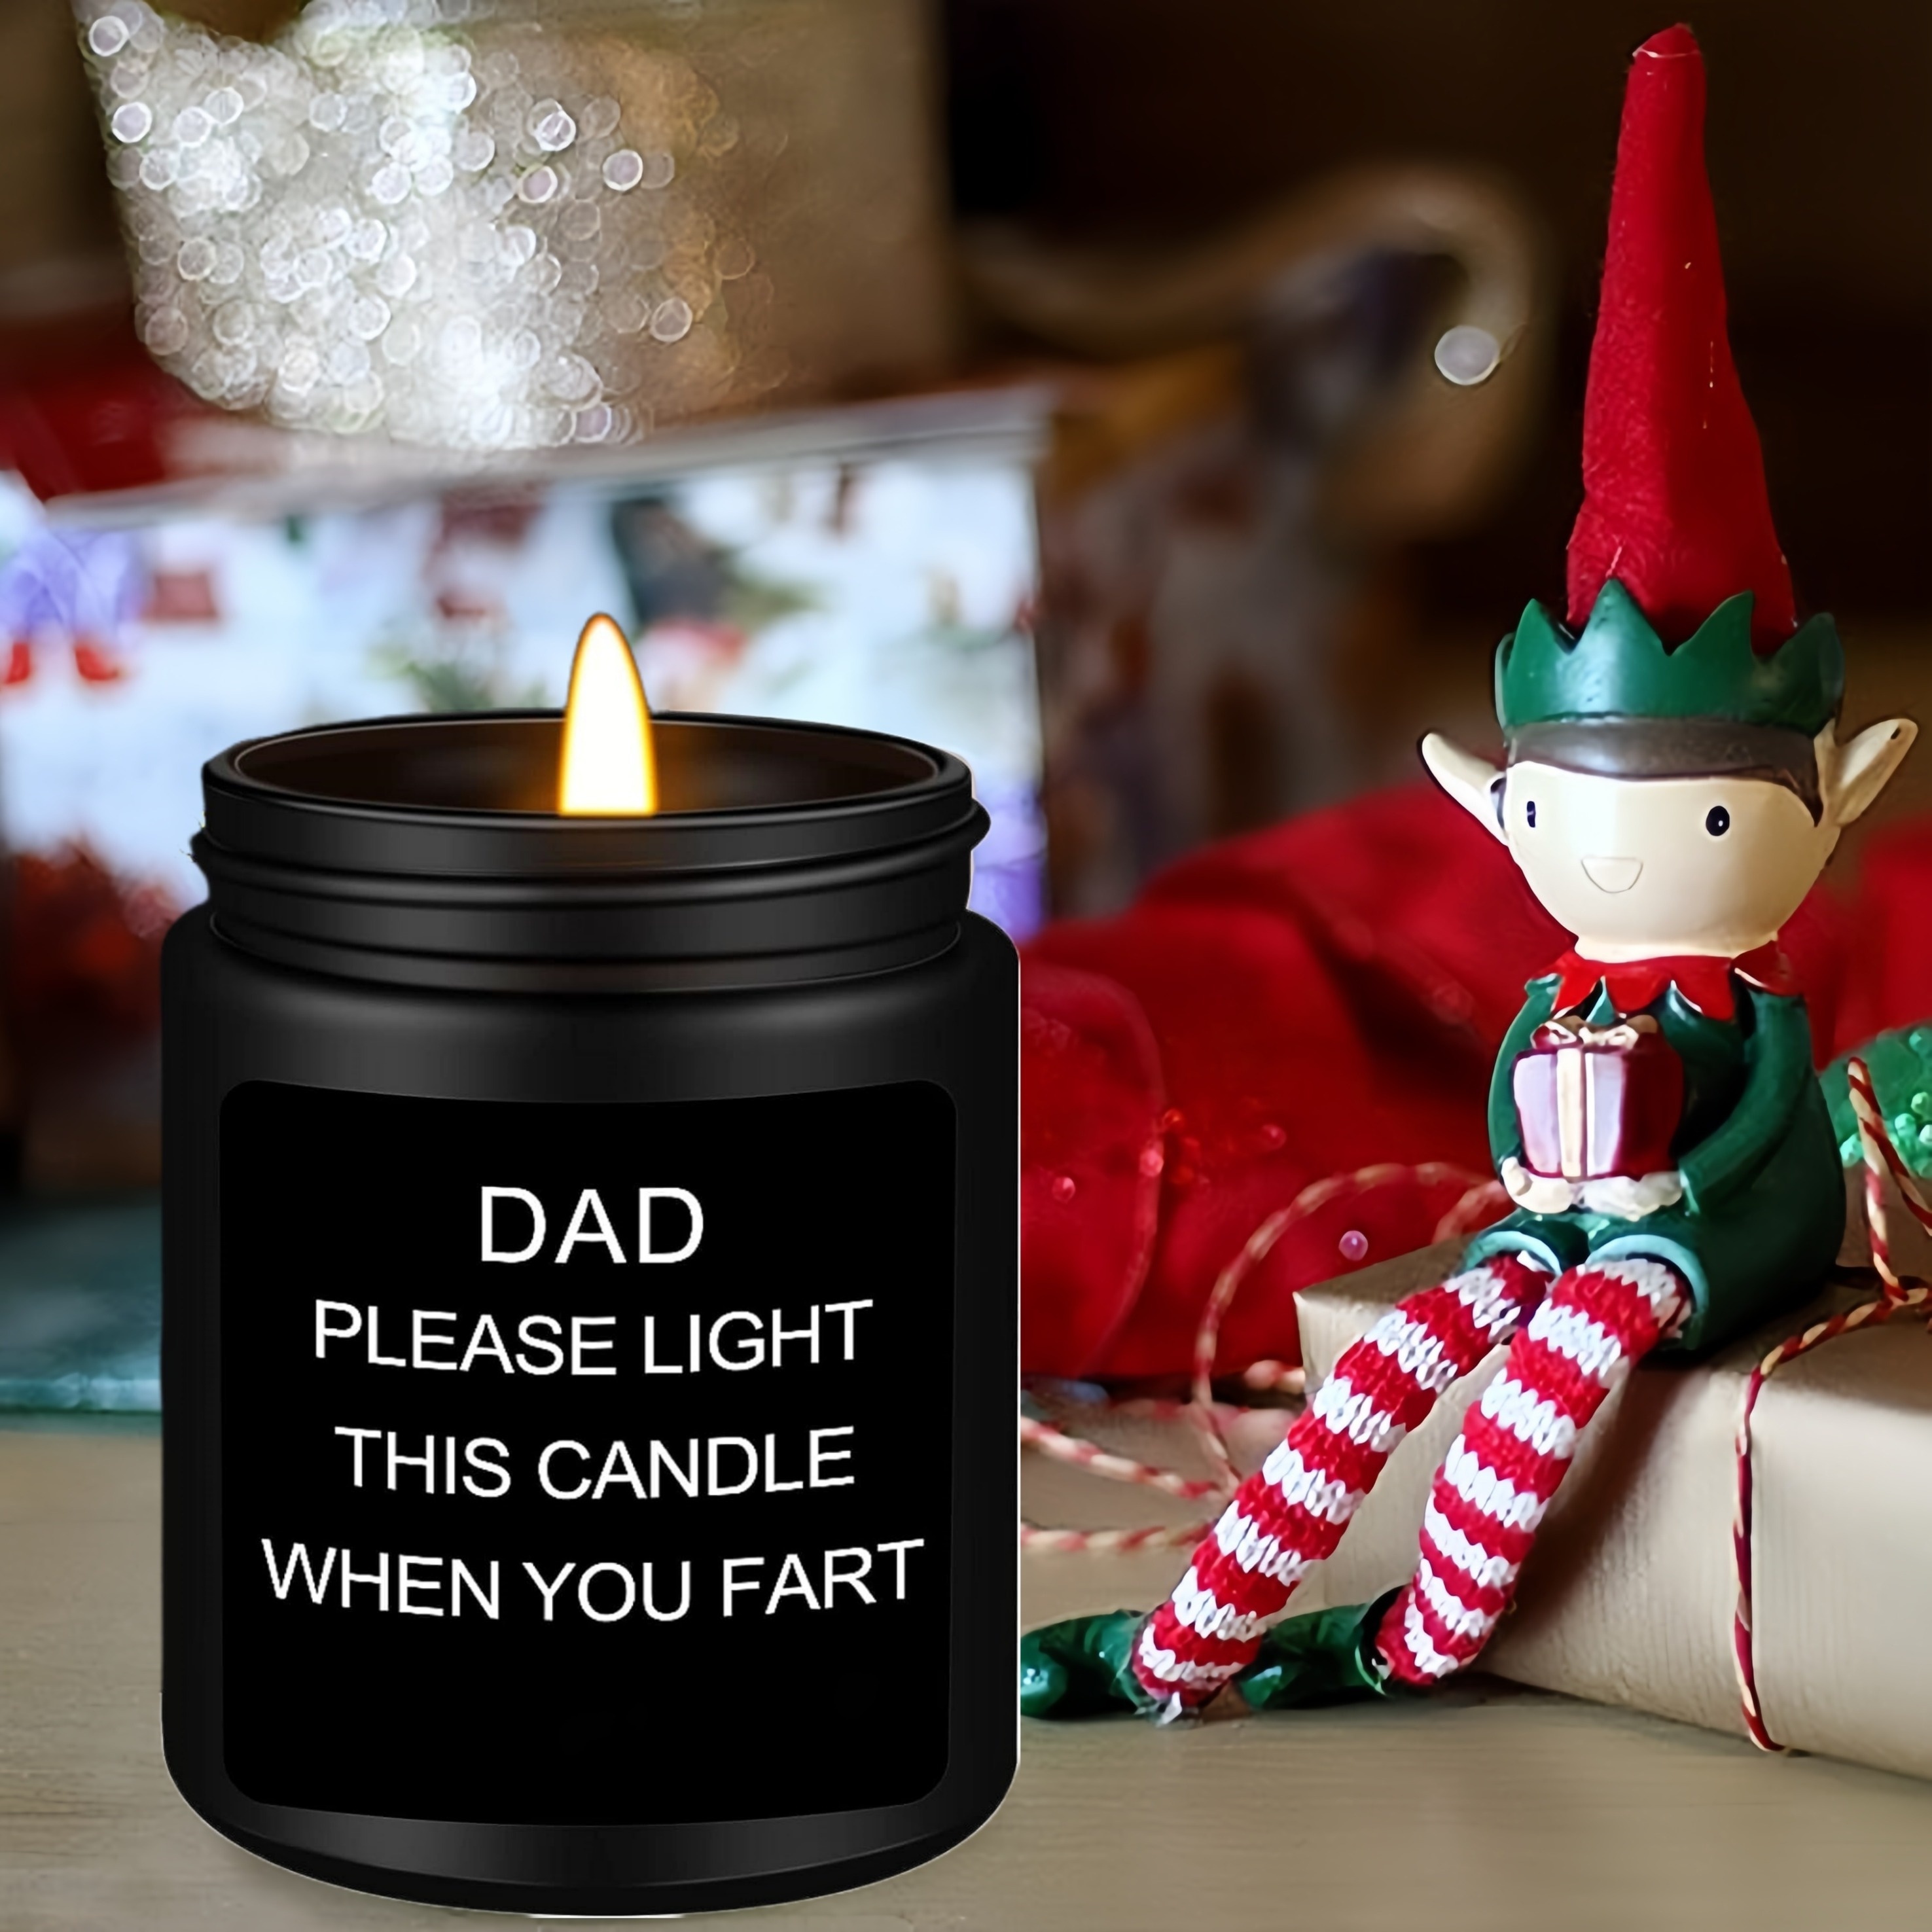 Funny Christmas Candle Christmas Gifts Holiday Decor 